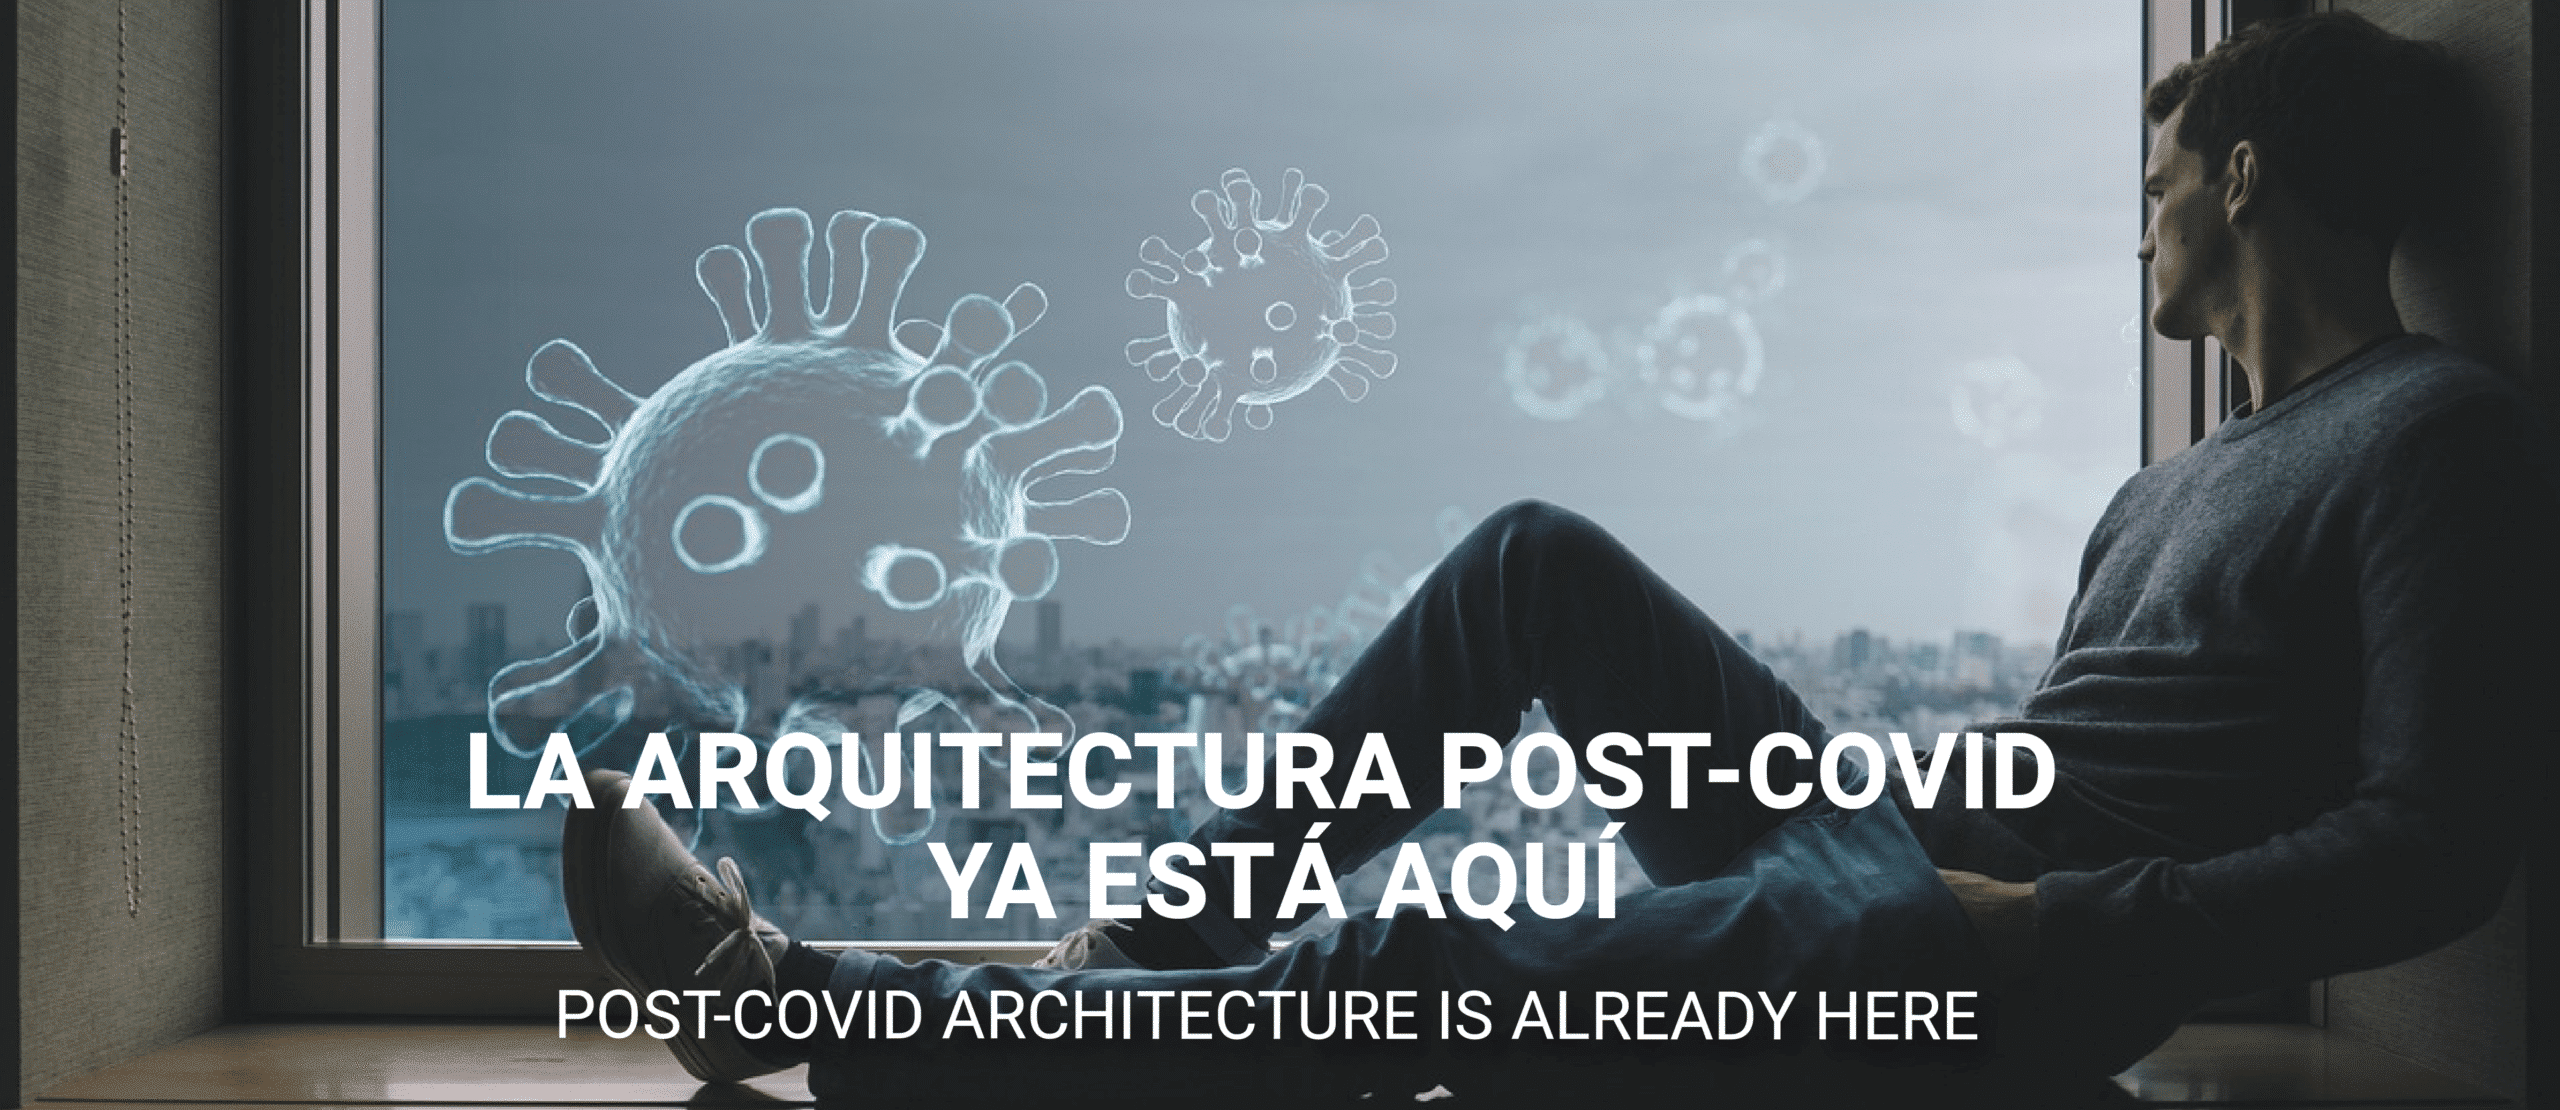 La arquitectura post-COVID